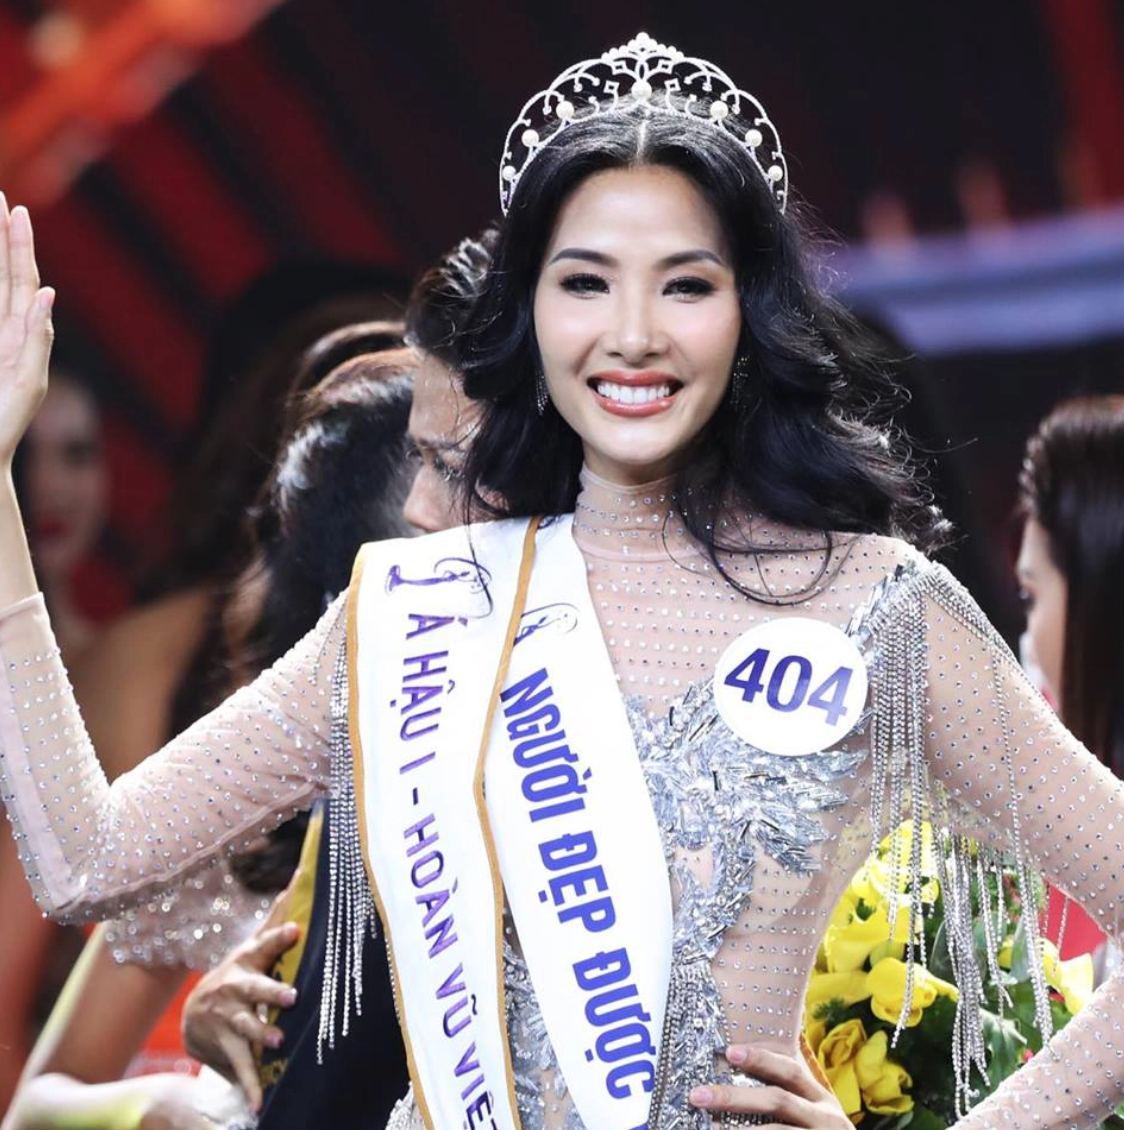 Top 3 Hoa hậu Hoàn vũ Việt Nam 2017 hiện tại: Ngày càng nhuận sắc, 1 người đẹp chuẩn bị lên chức mẹ bỉm - Ảnh 5.